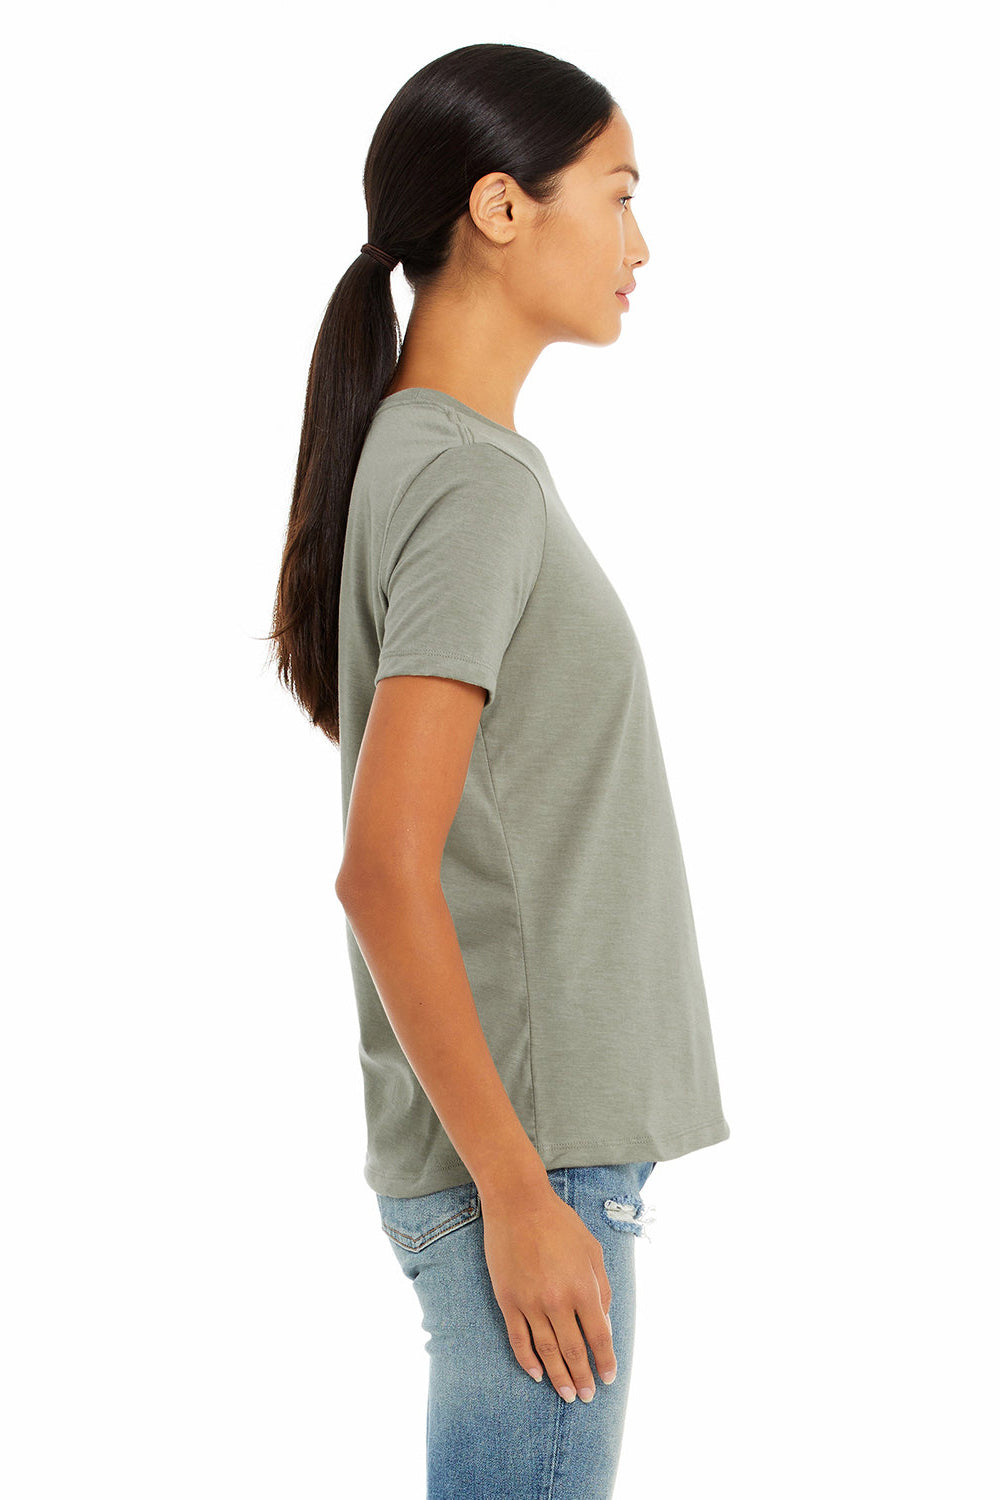 Bella + Canvas BC6400CVC/6400CVC Womens CVC Short Sleeve Crewneck T-Shirt Heather Stone Model Side